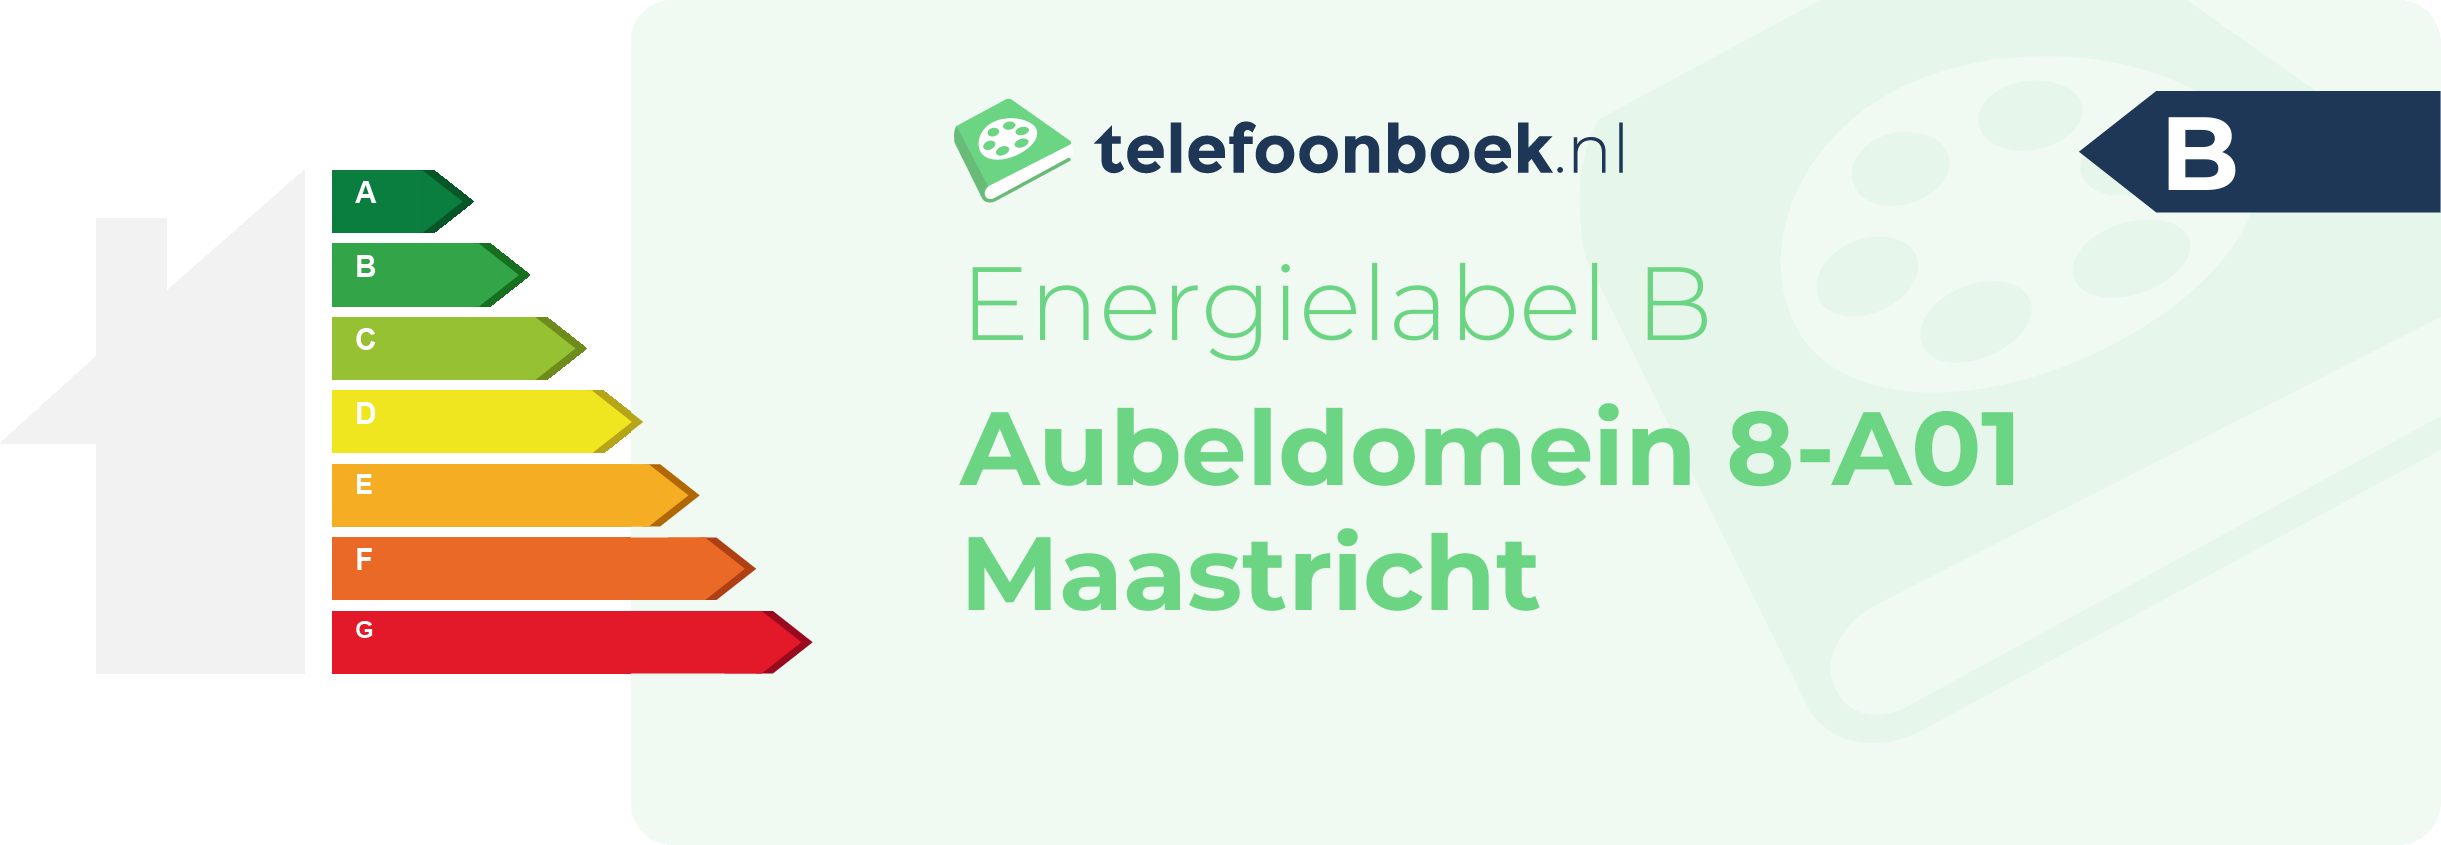 Energielabel Aubeldomein 8-A01 Maastricht